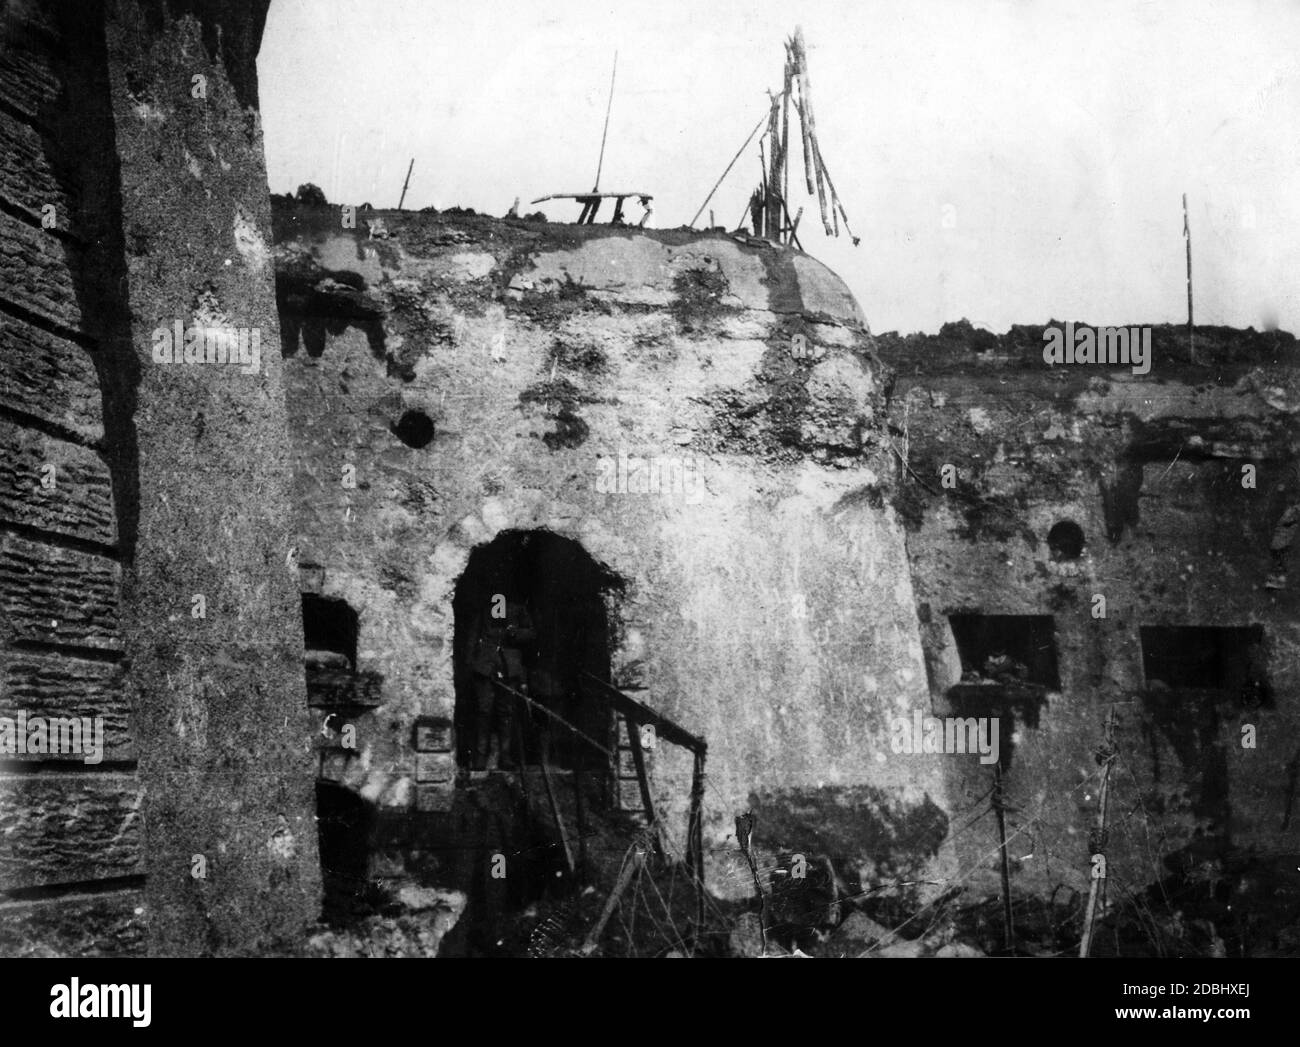 1916: Schlacht bei Verdun: Fort Douaumont nach der Besetzung durch deutsche Truppen im März 1916. Stockfoto